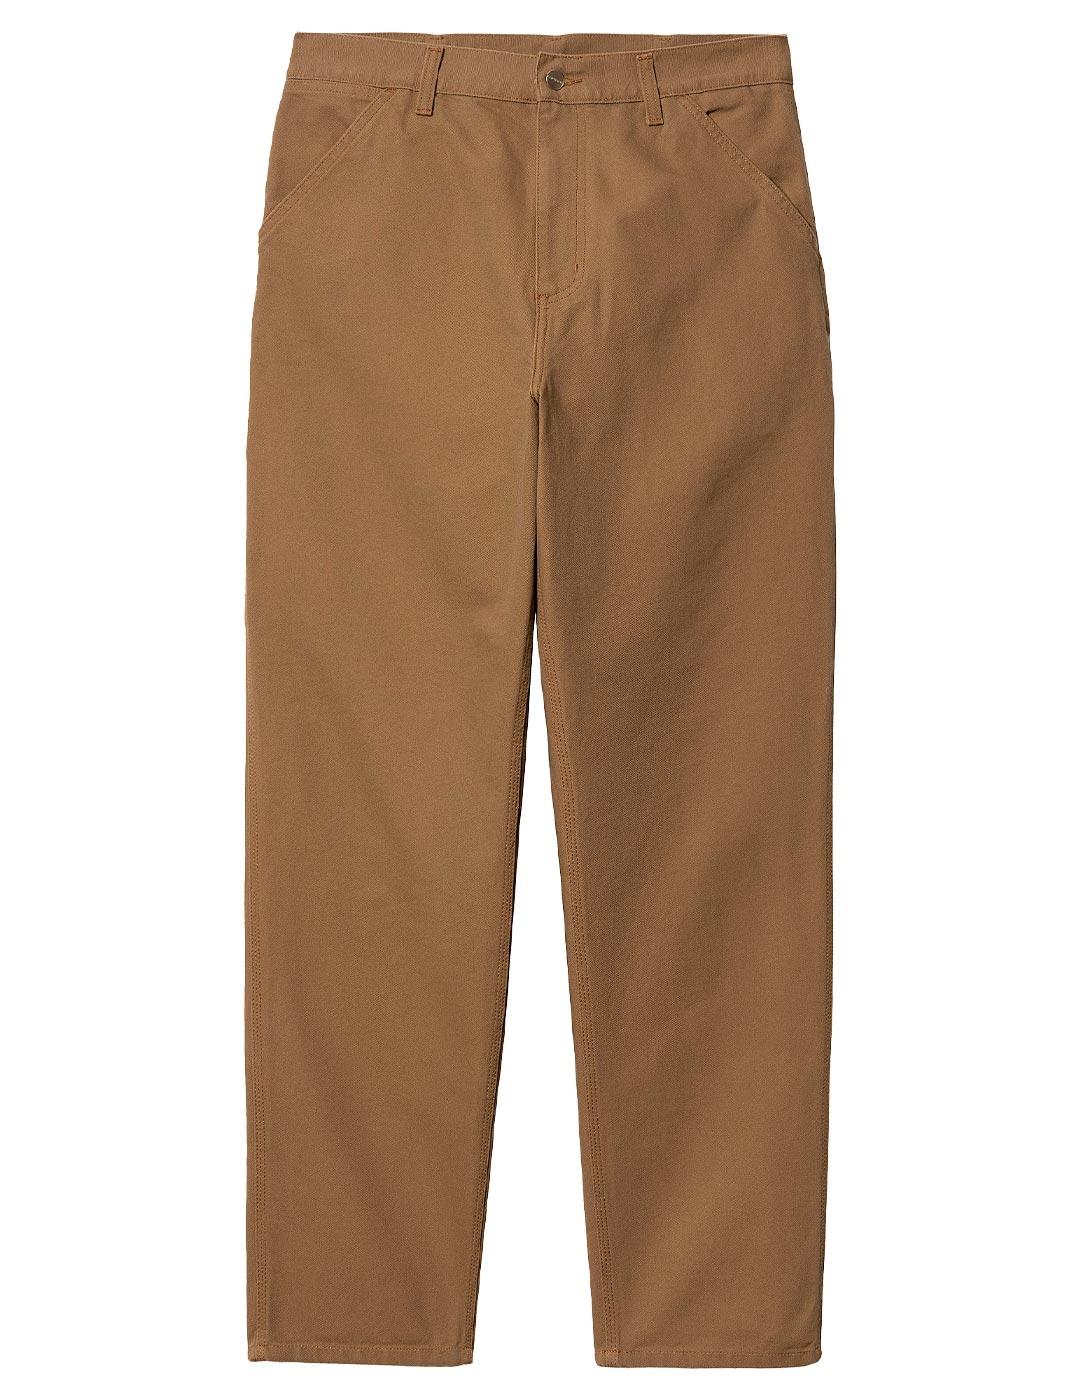 Pantalon Carhartt Wip Single Knee brun